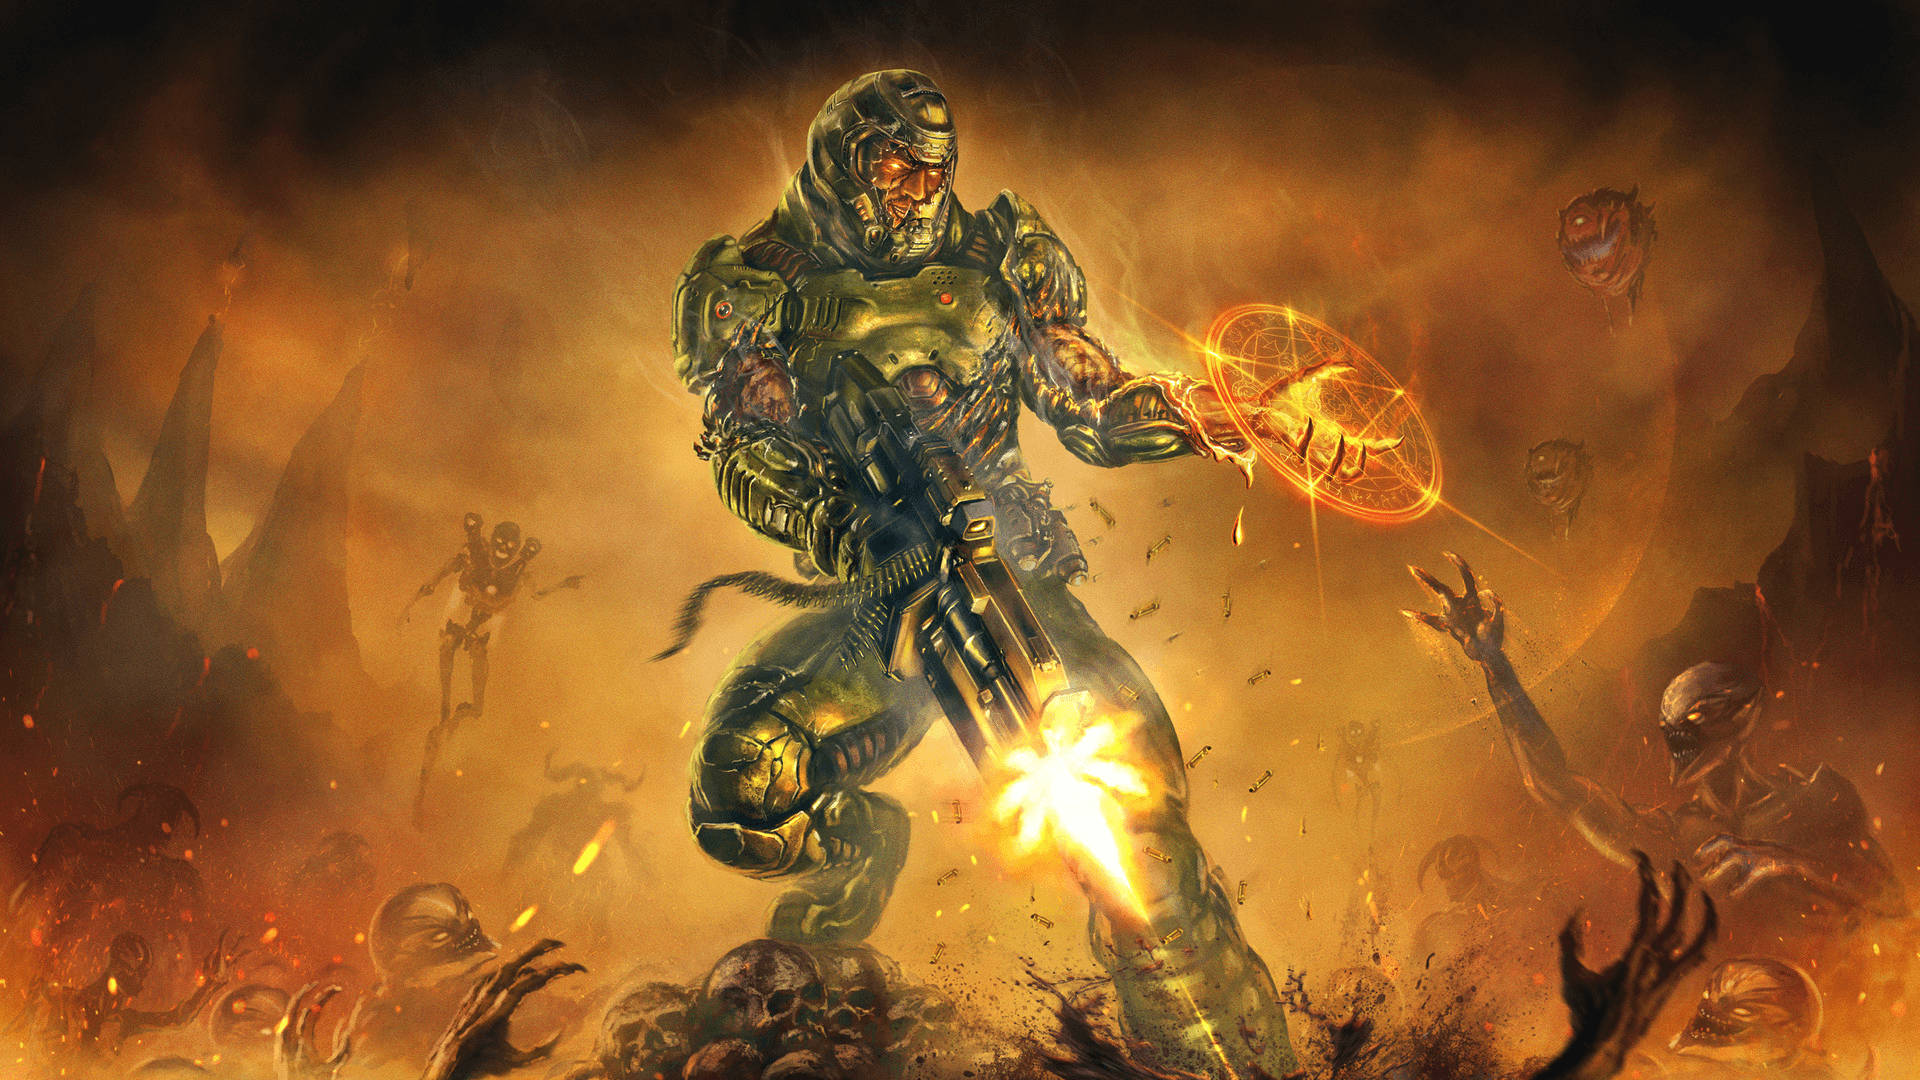 Doom Hd Space Marine With Gun Background